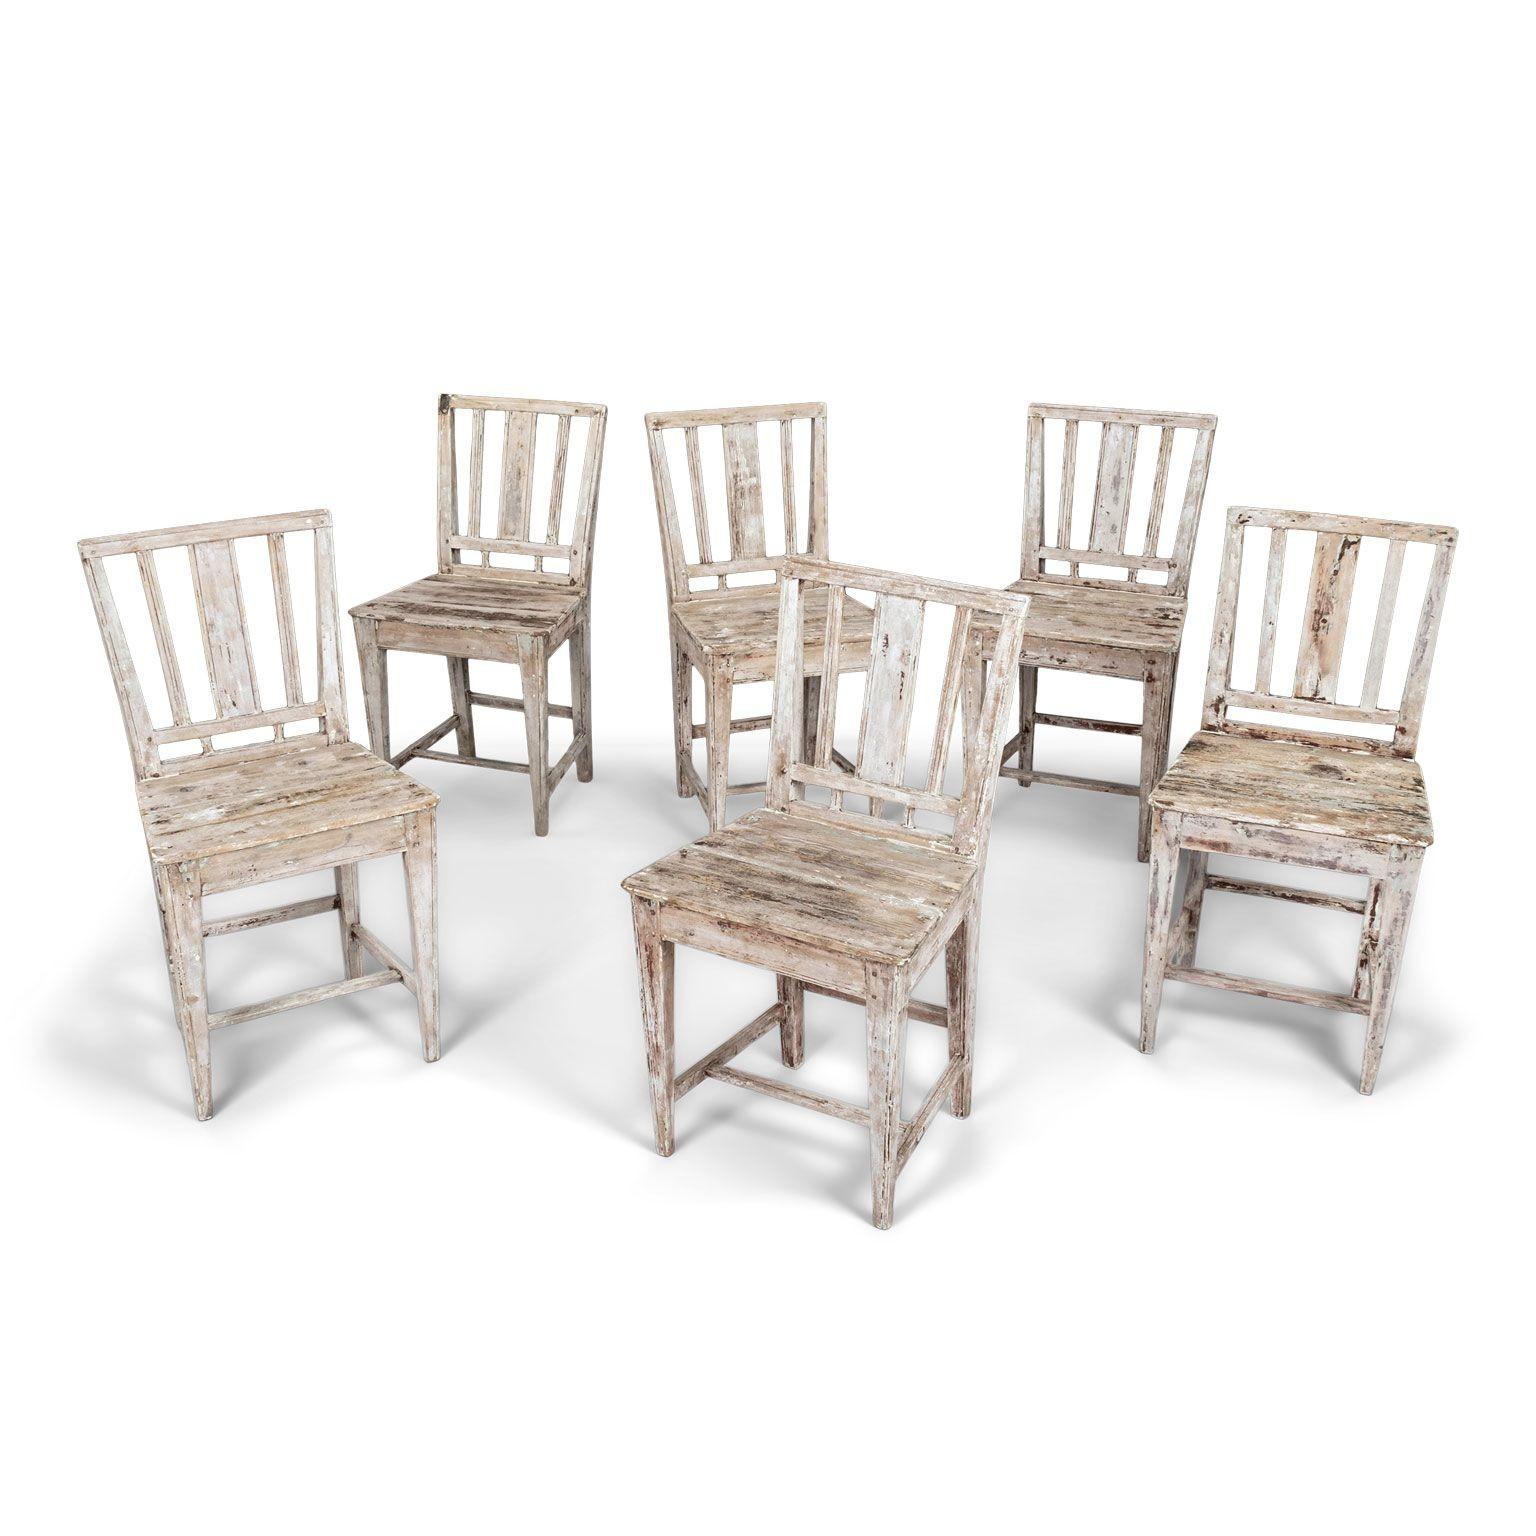 Ensemble de six chaises de ferme suédoises peintes du début du 19e siècle, vers 1810-1829. Robuste, stable. Tous les joints sont serrés. Pas d'oscillation. Vestiges de peintures anciennes et précoces. Intéressante réparation en acier sur le haut du